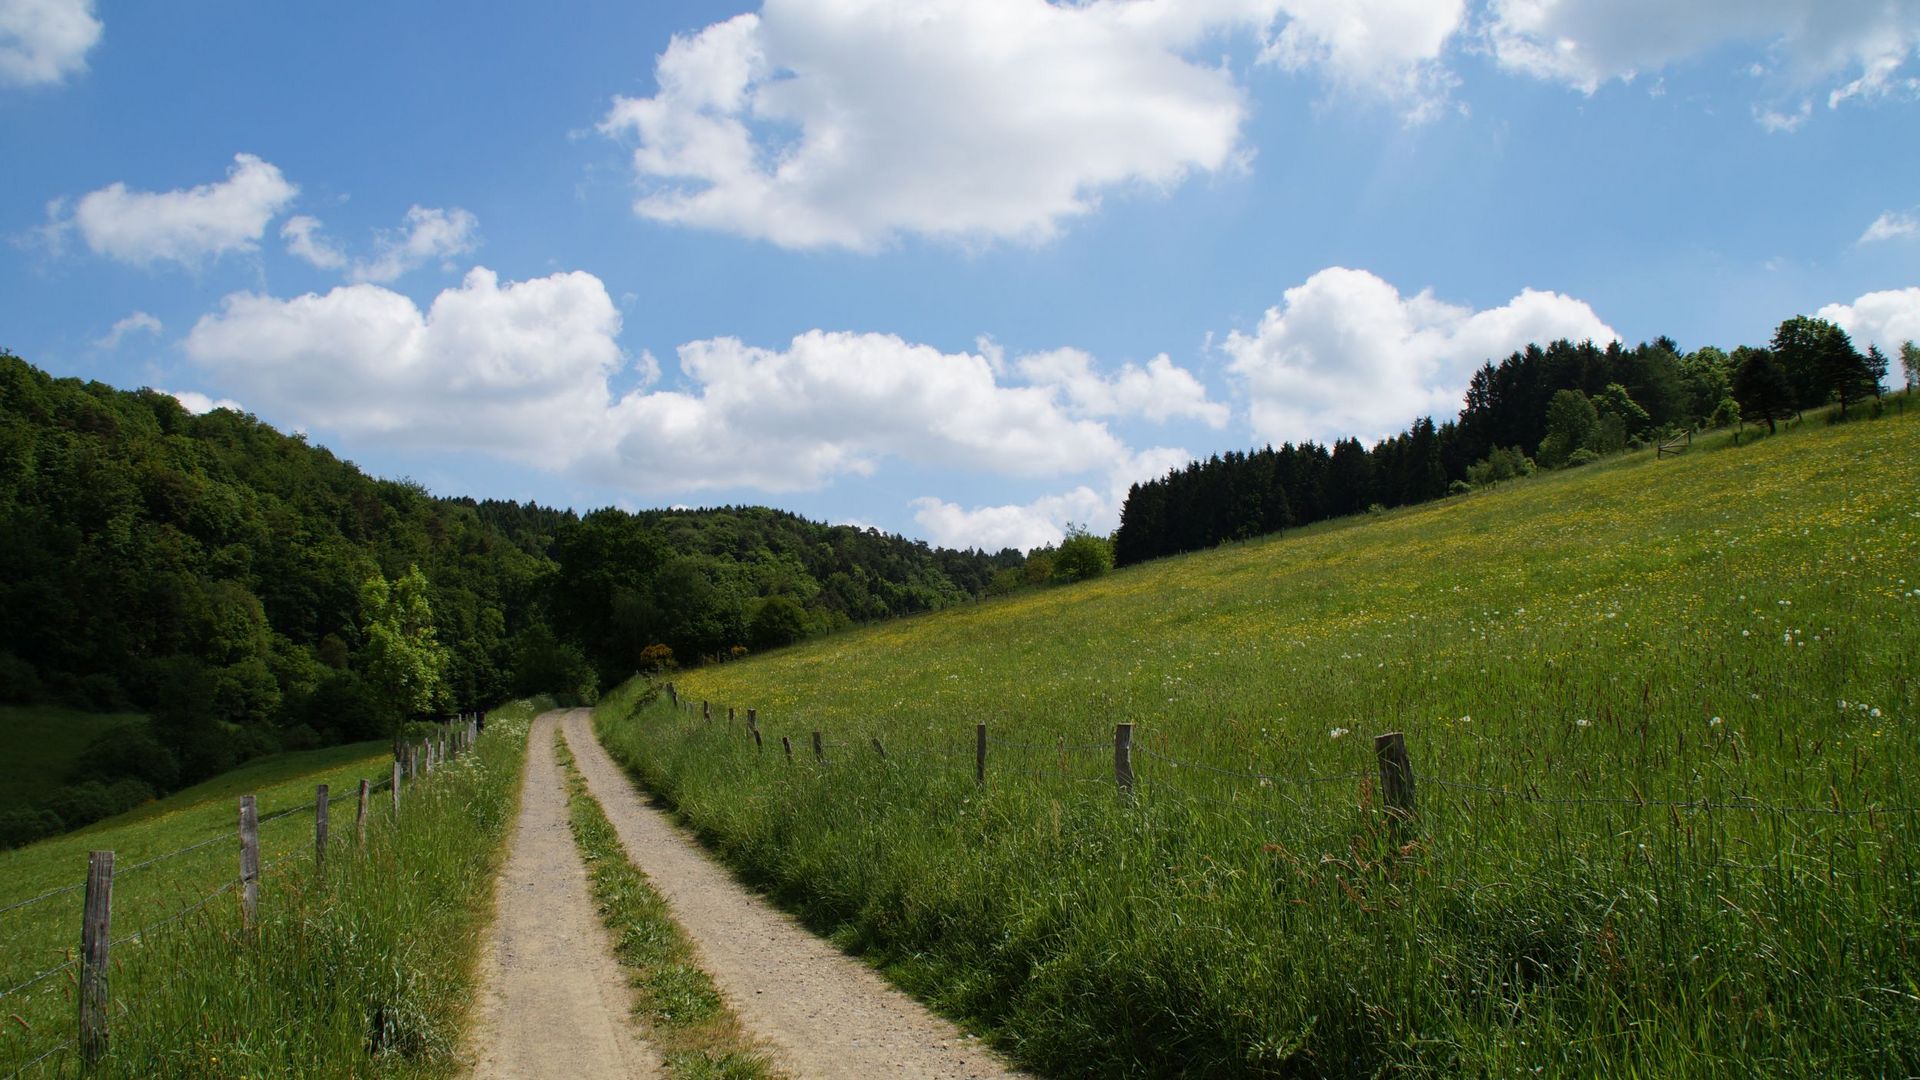 Zwischen zwei großen grünen Wiesen führt ein Feldweg auf einen Wald im Hintergrund des Bildes zu. Der Himmel ist blau und von einzelnen weißen Wolken durchzogen.